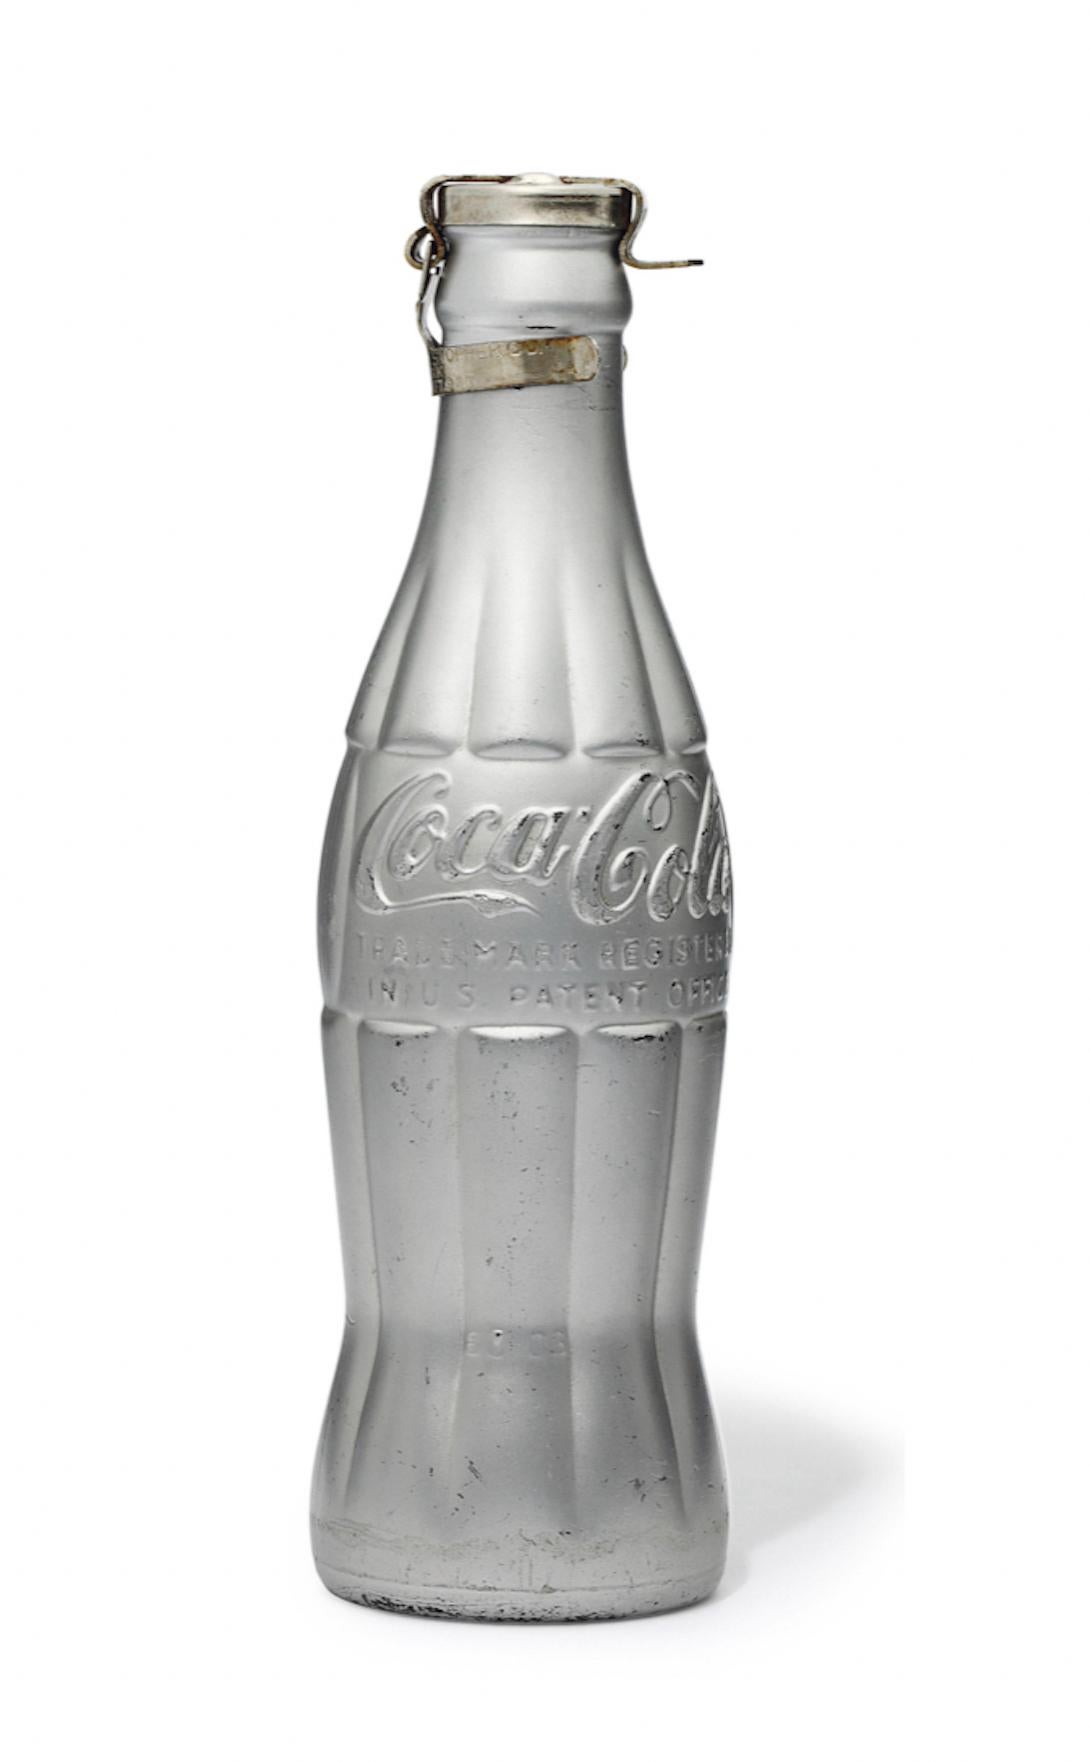 ANDY WARHOL (1928-1987)

Bouteille de Coca-Cola en verre, bouchon de bouteille en métal et peinture en aérosol. Signé avec les initiales de l'artiste à l'encre noire " A. W.' Exécuté en 1967.